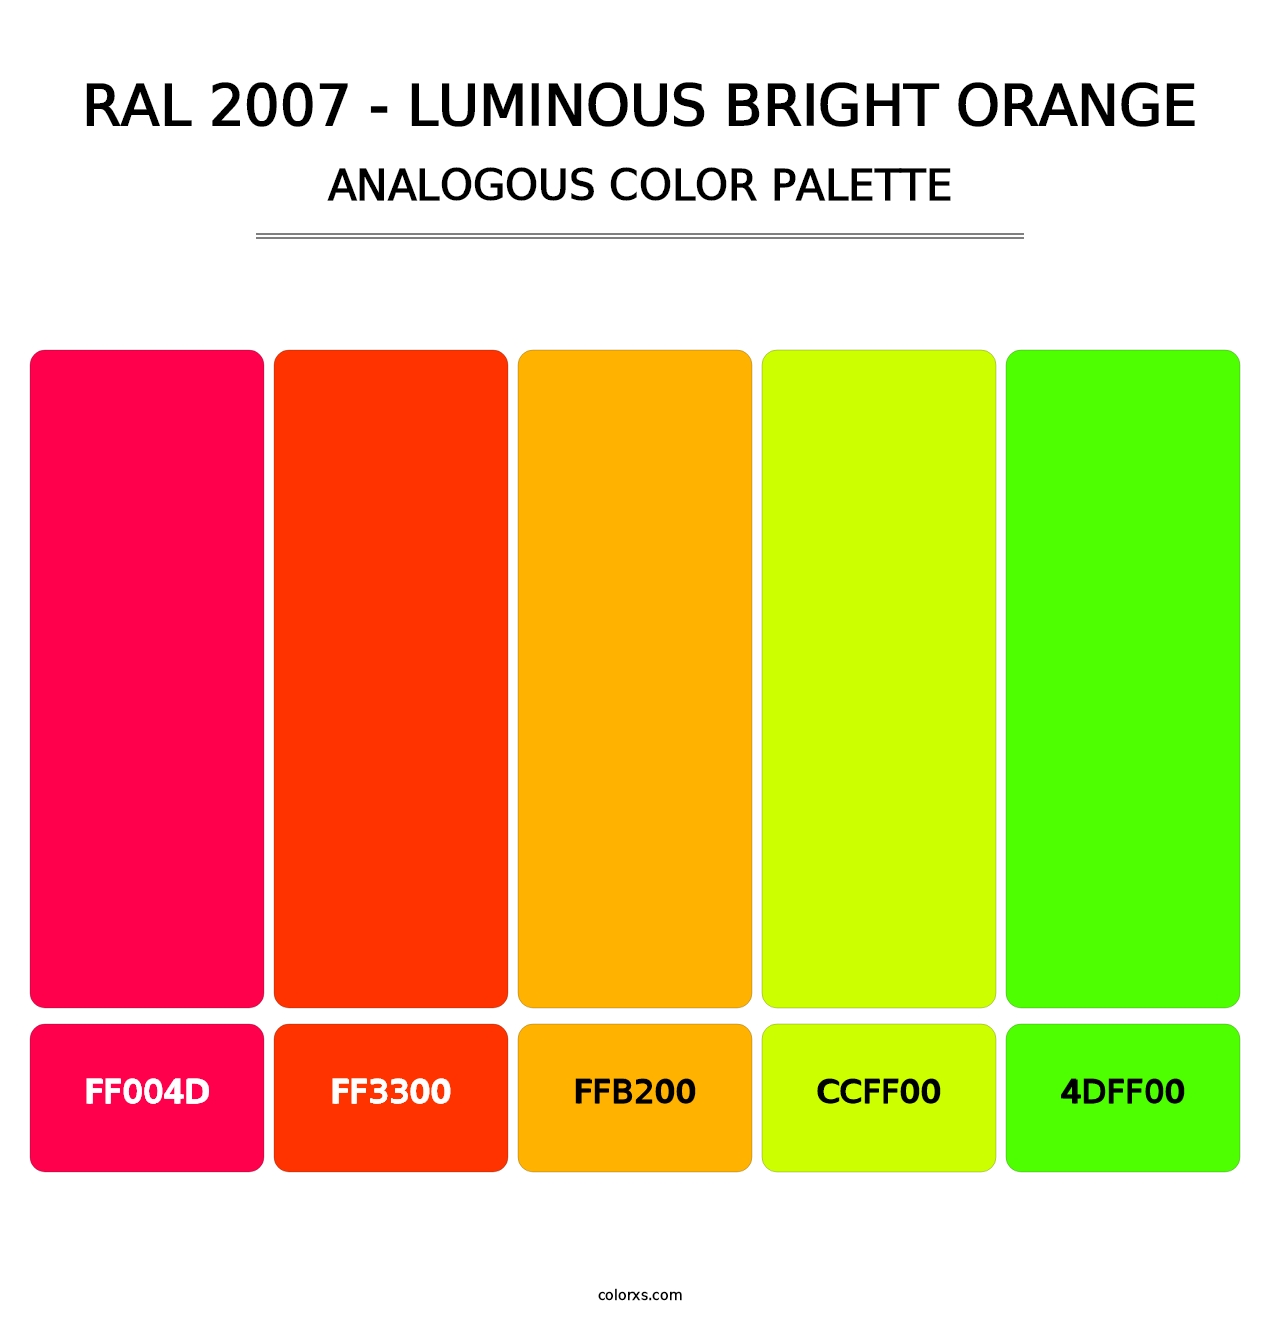 RAL 2007 - Luminous Bright Orange - Analogous Color Palette